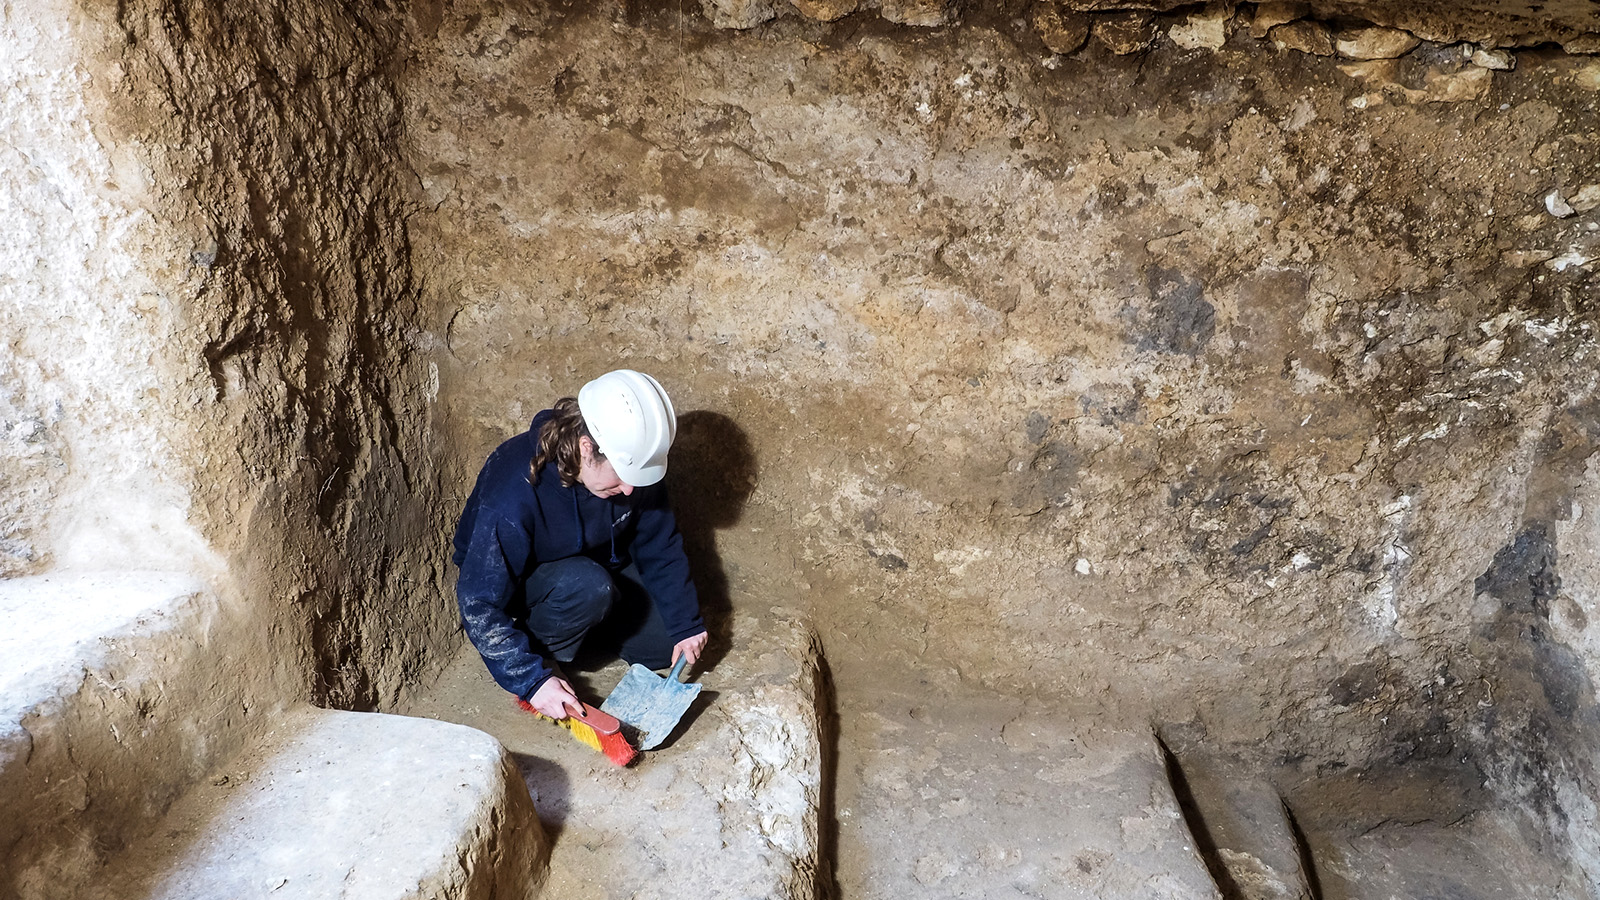 מנהלת החפירה, שרה הירשברג, באחד המקוואות שנחשפו. (צילום: אסף פרץ, באדיבות רשות העתיקות).